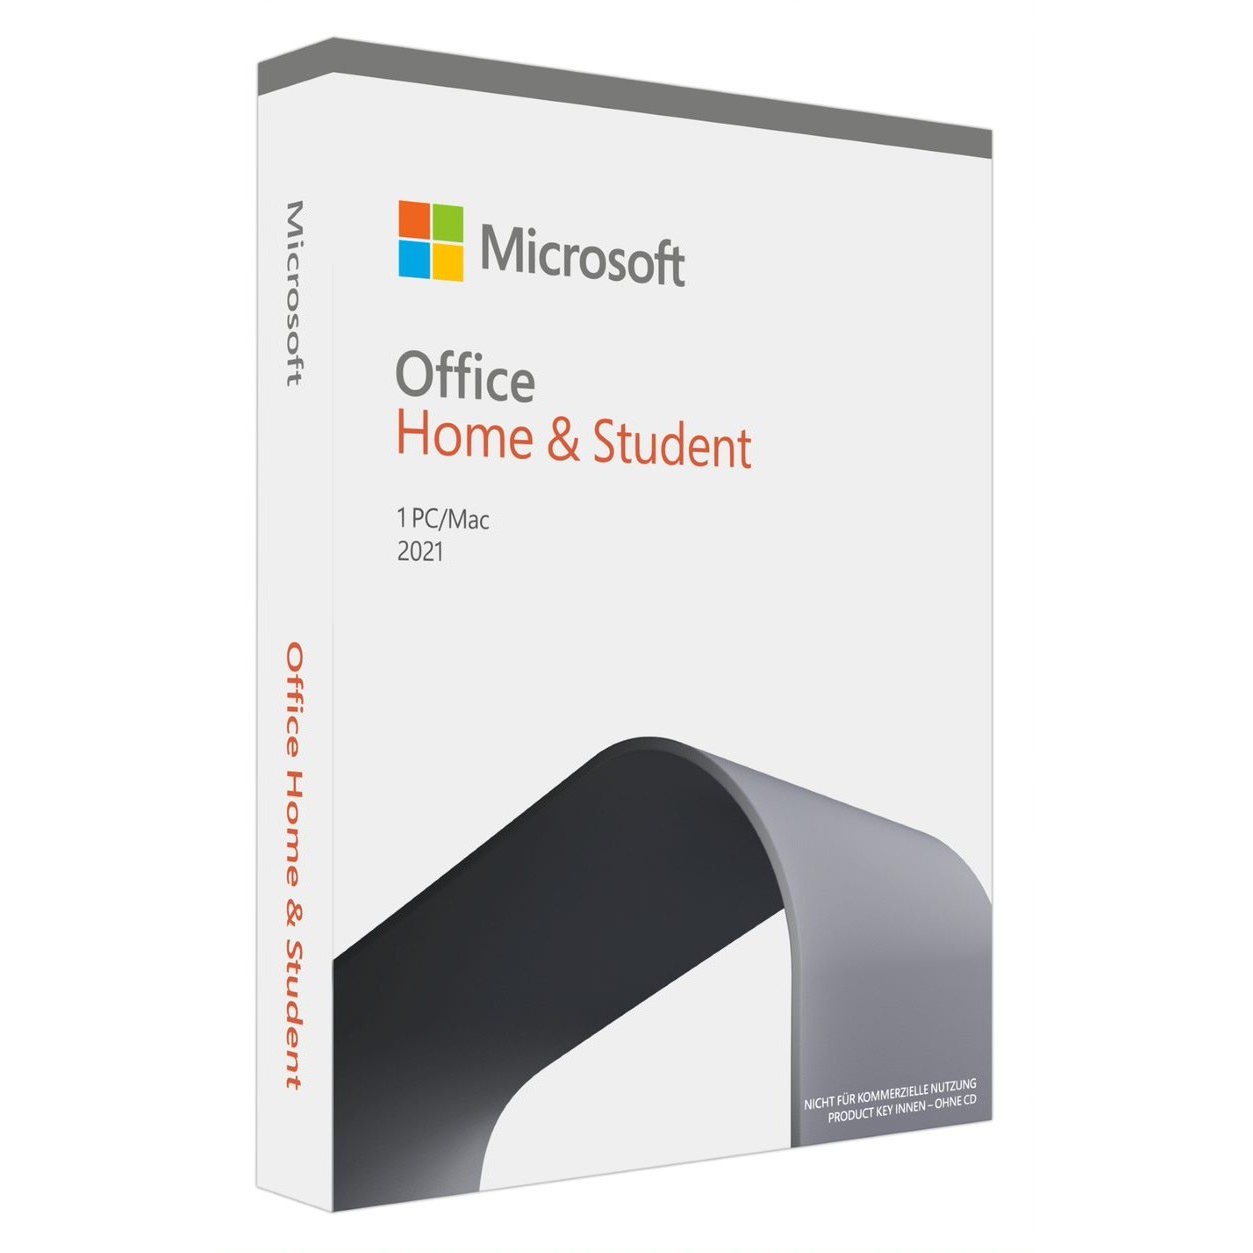 Microsoft Office 2021 Home & Student Voll 1 Lizenz(en) Deutsch